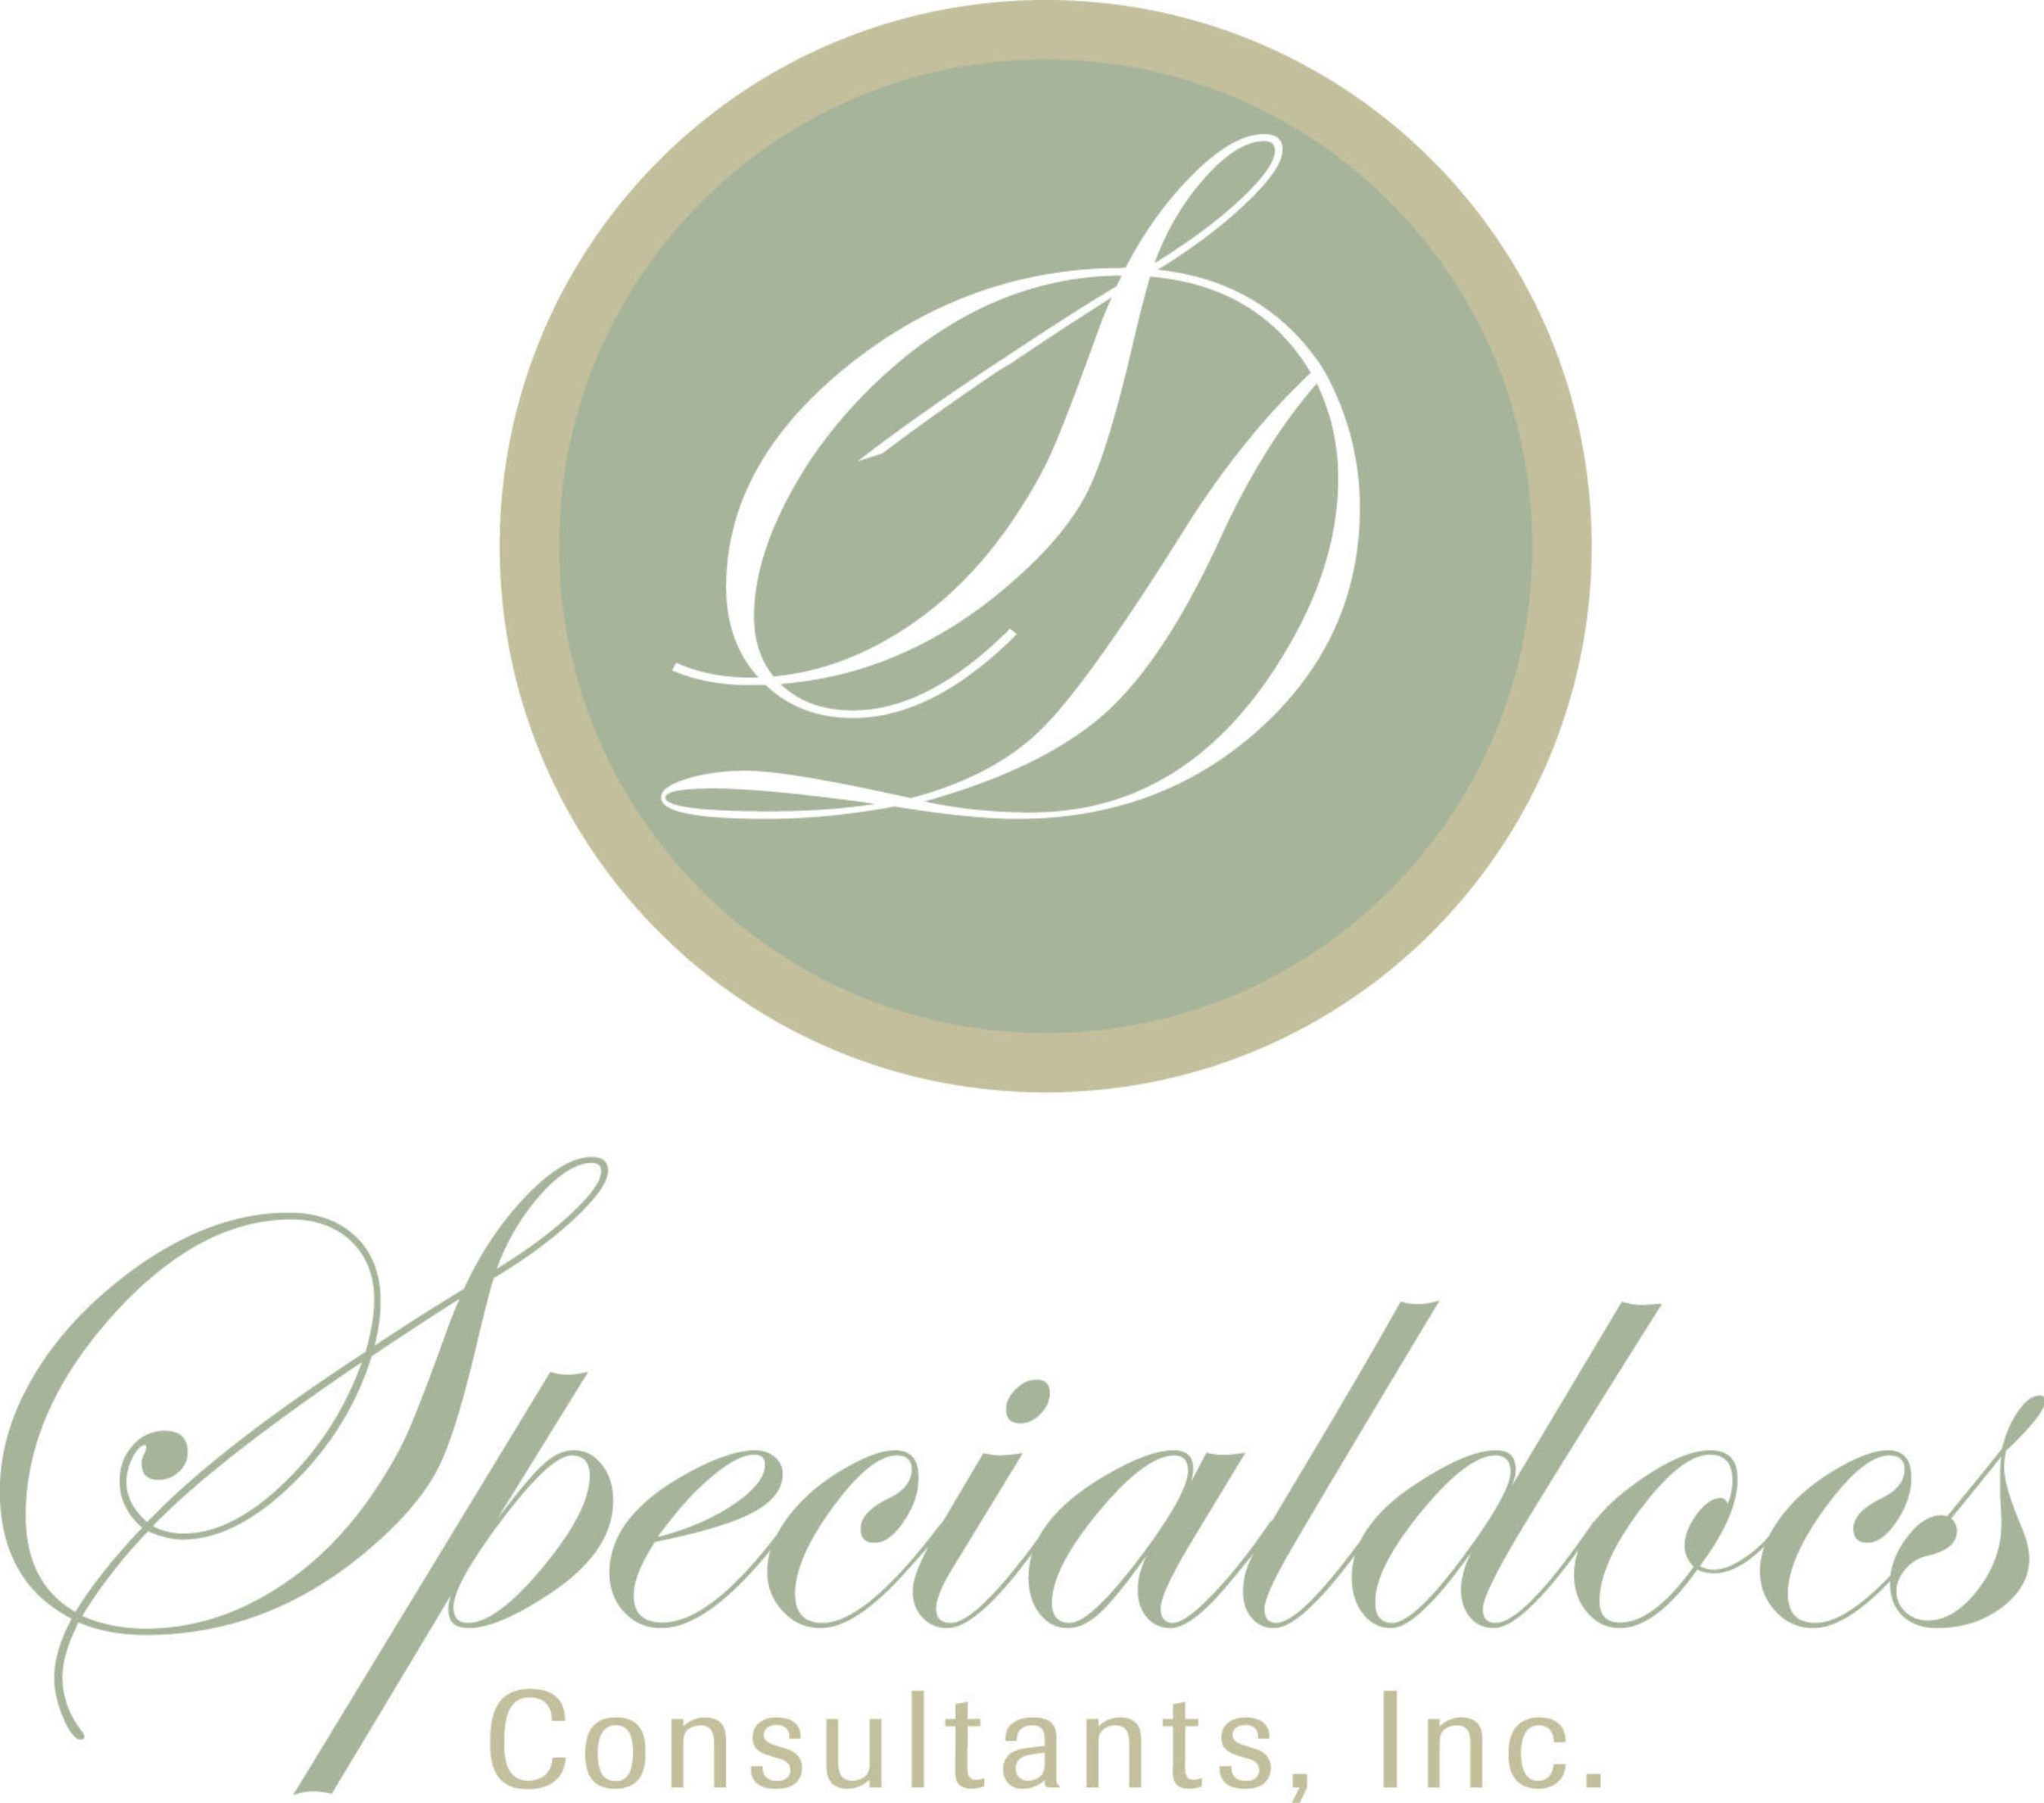 Specialdocs Logo. (PRNewsFoto/Specialdocs) (PRNewsFoto/Specialdocs)